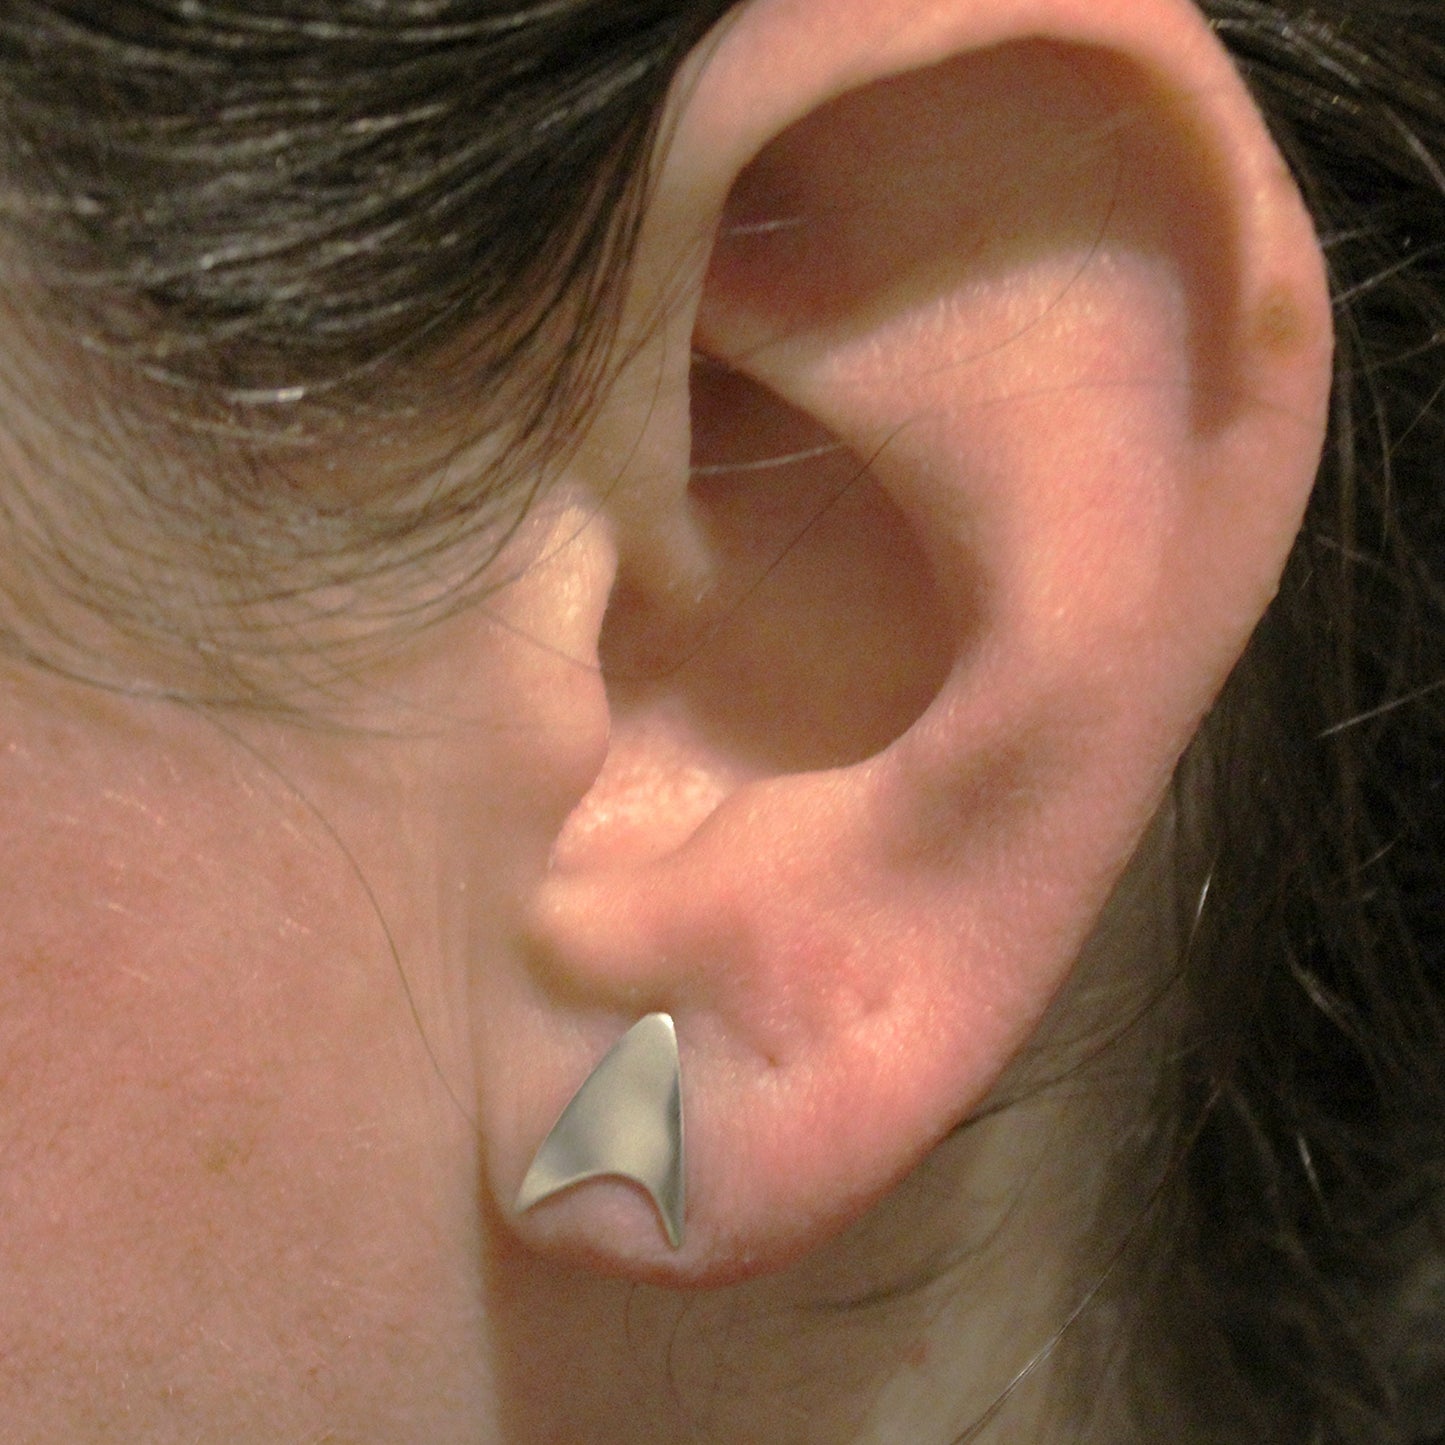 Star Trek Starfleet Delta Insignia 925 Silver Earrings